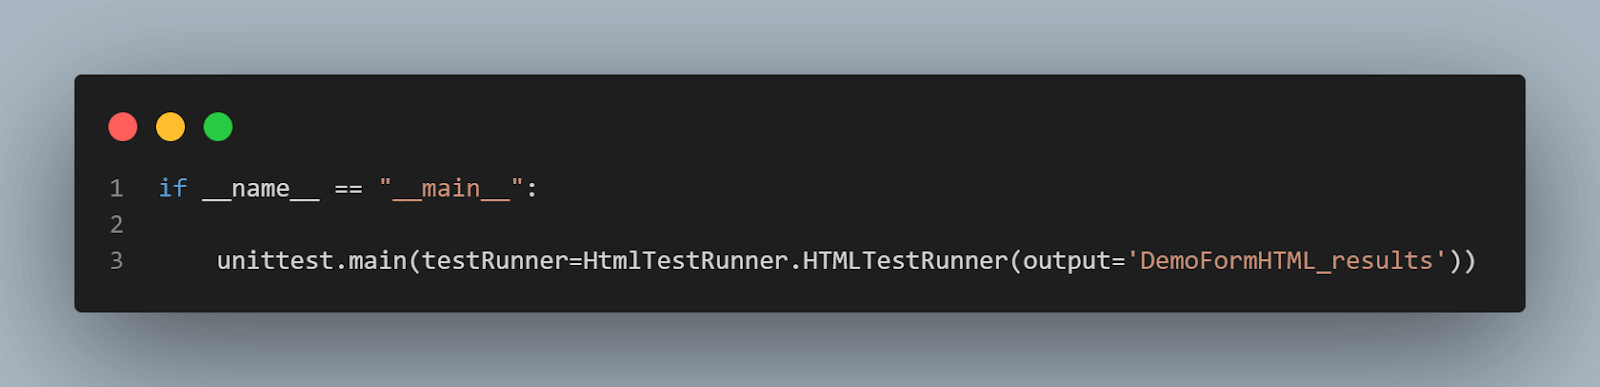 html test runner